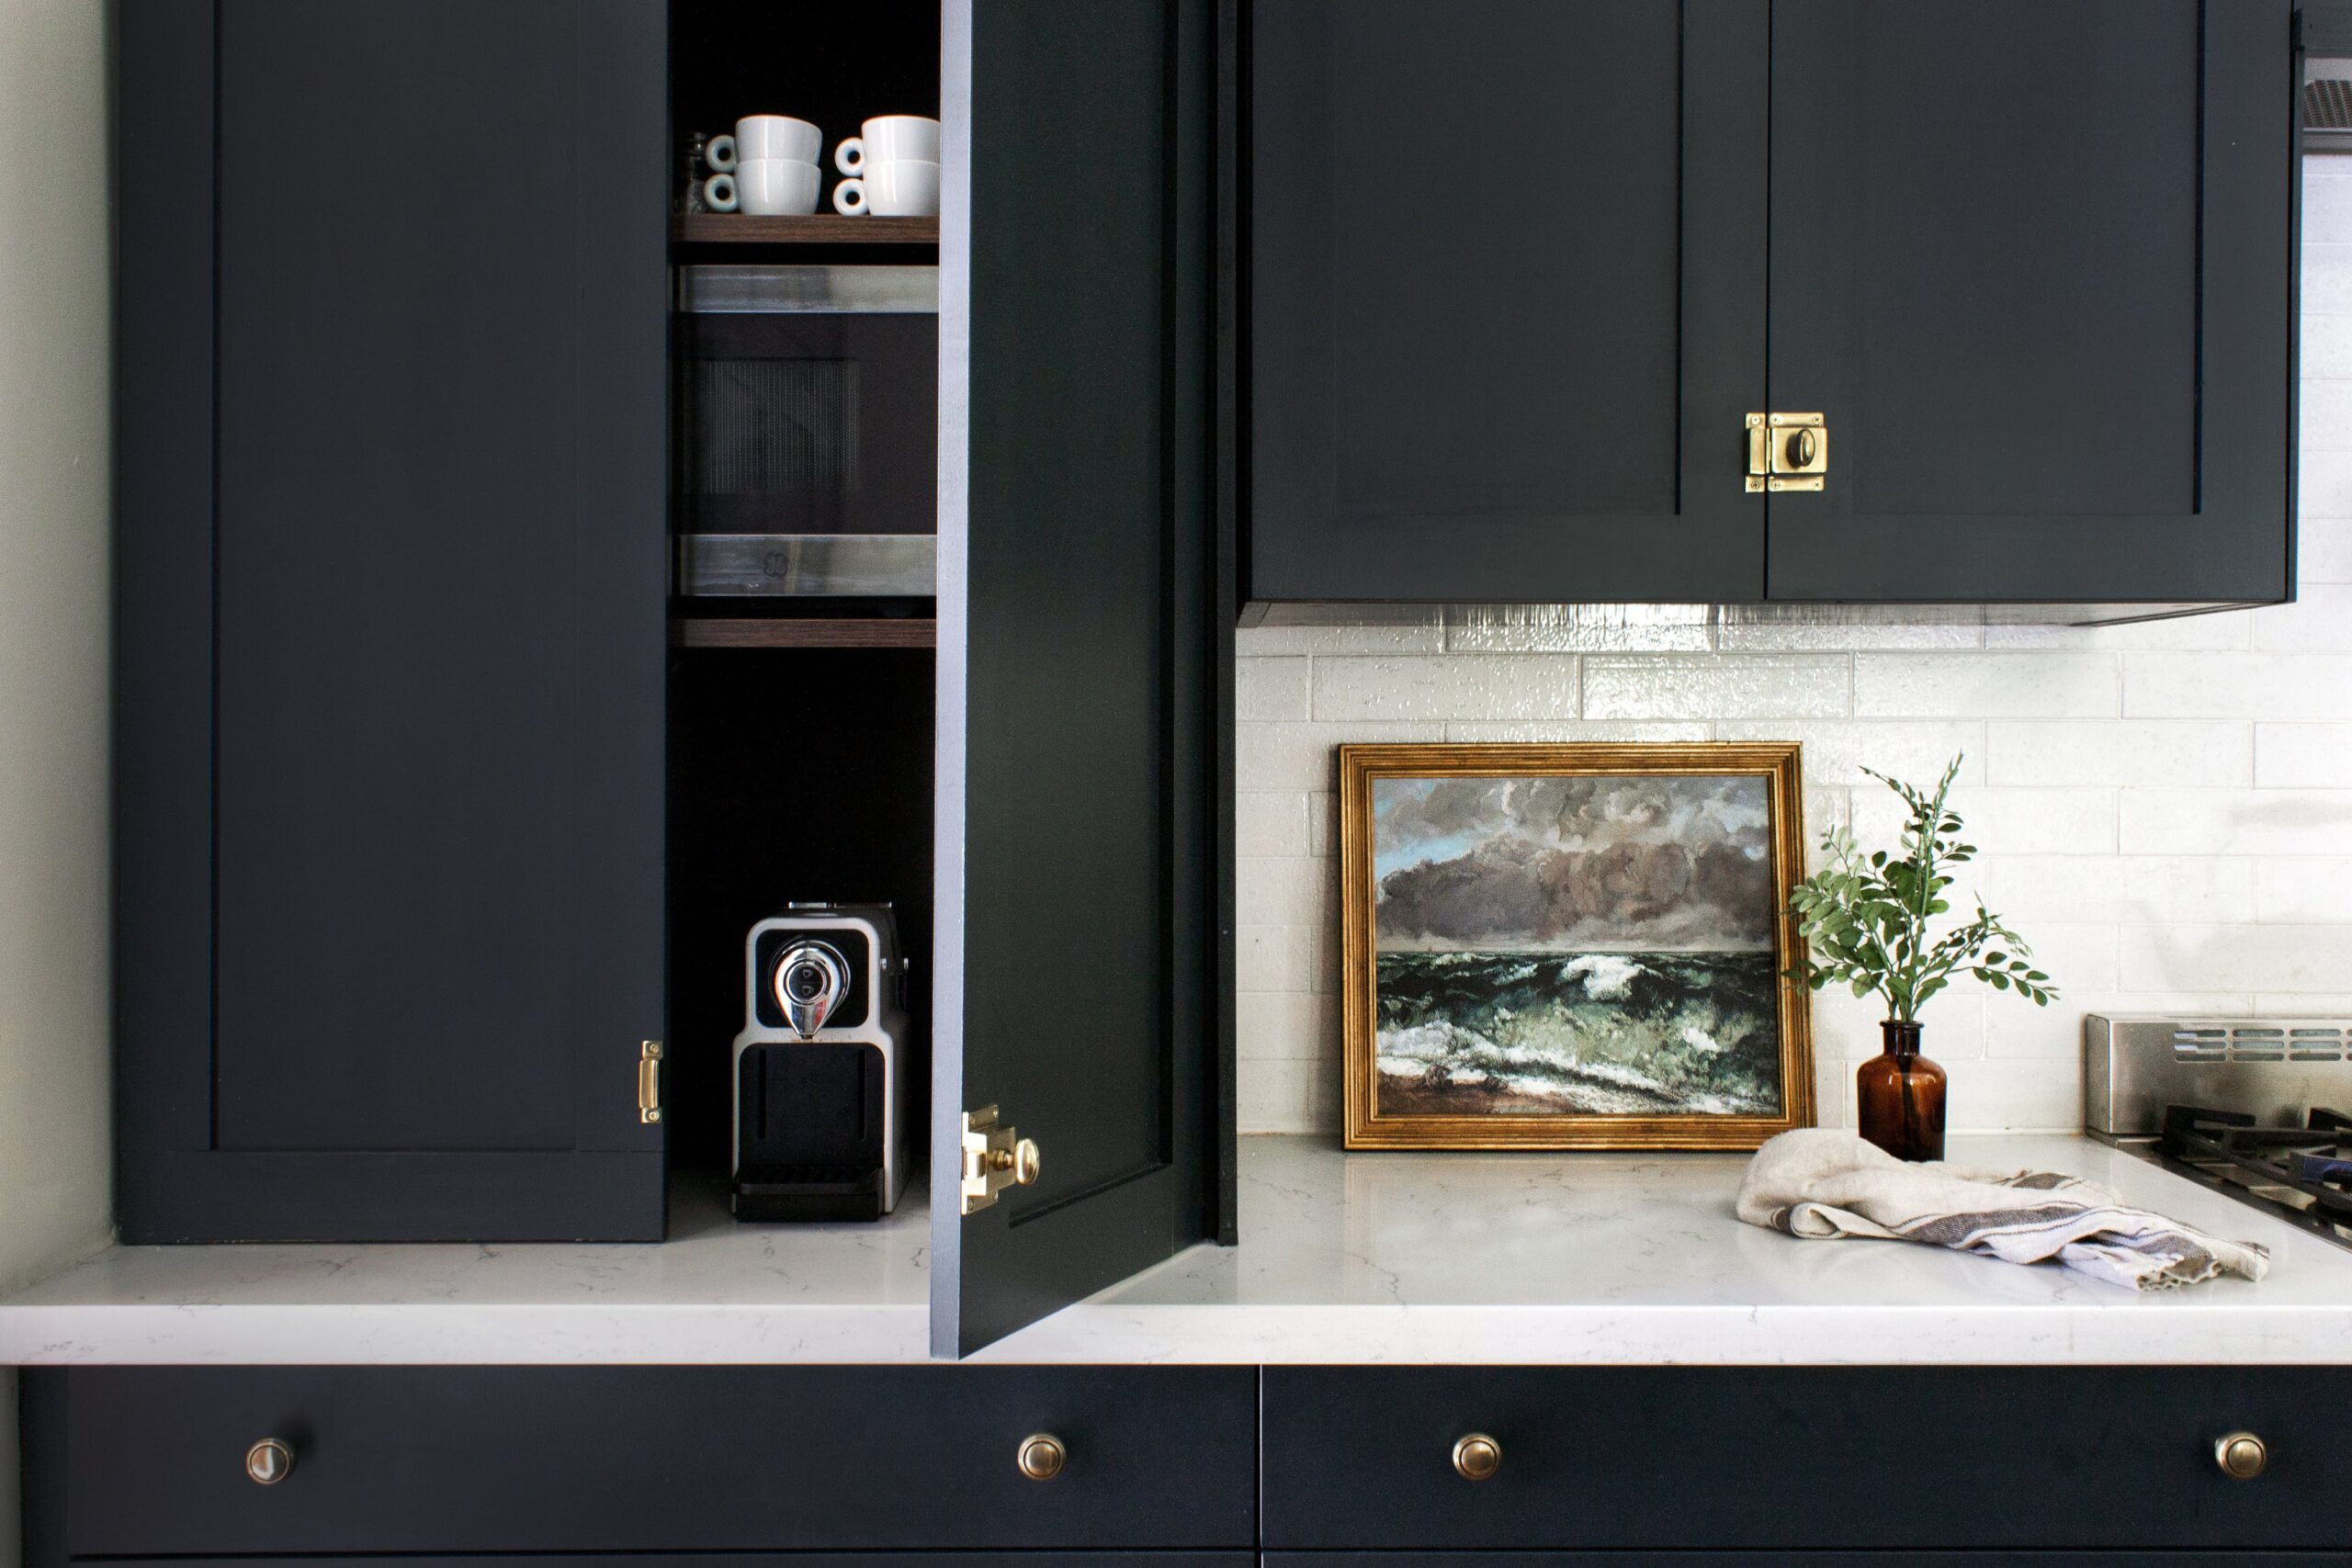 Black kitchen with appliance garage